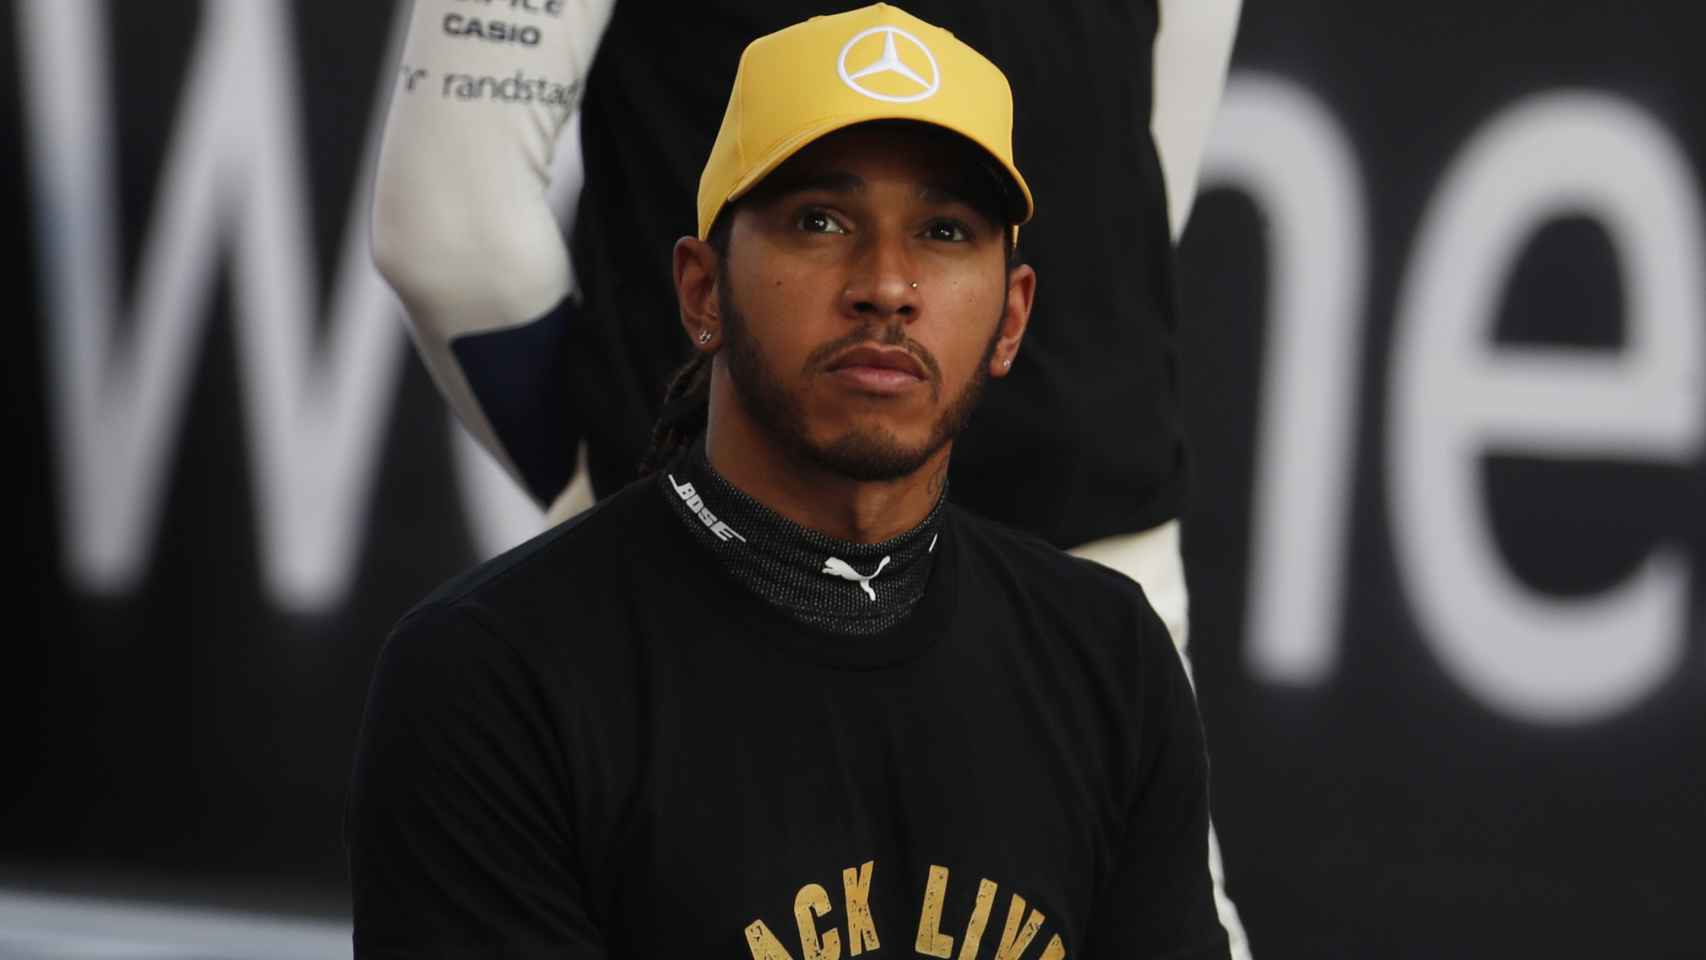 Lewis Hamilton, durante un Gran Premio de Fórmula 1 de la temporada 2020